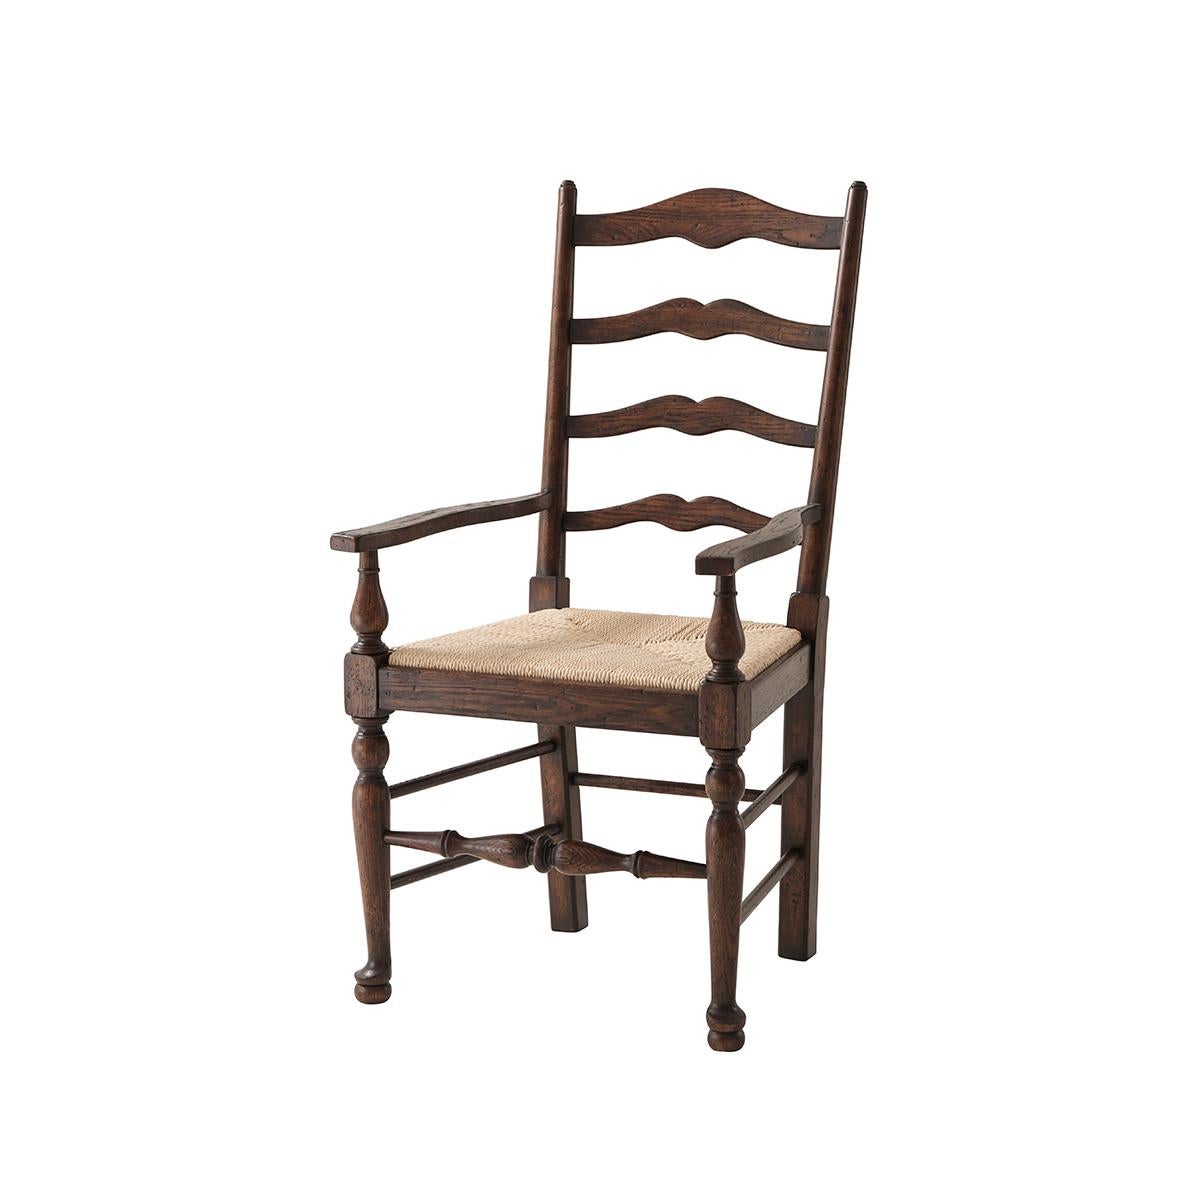 Sessel mit Leiterrücken aus Eichenholz, mit gebogenen Stäben zwischen gedrechselten Stützen, über einem handgeflochtenen Sitz aus Binsengeflecht, auf gedrechselten Beinen mit pad und Kugelfüßen. Inspiriert von einem englischen Original aus dem